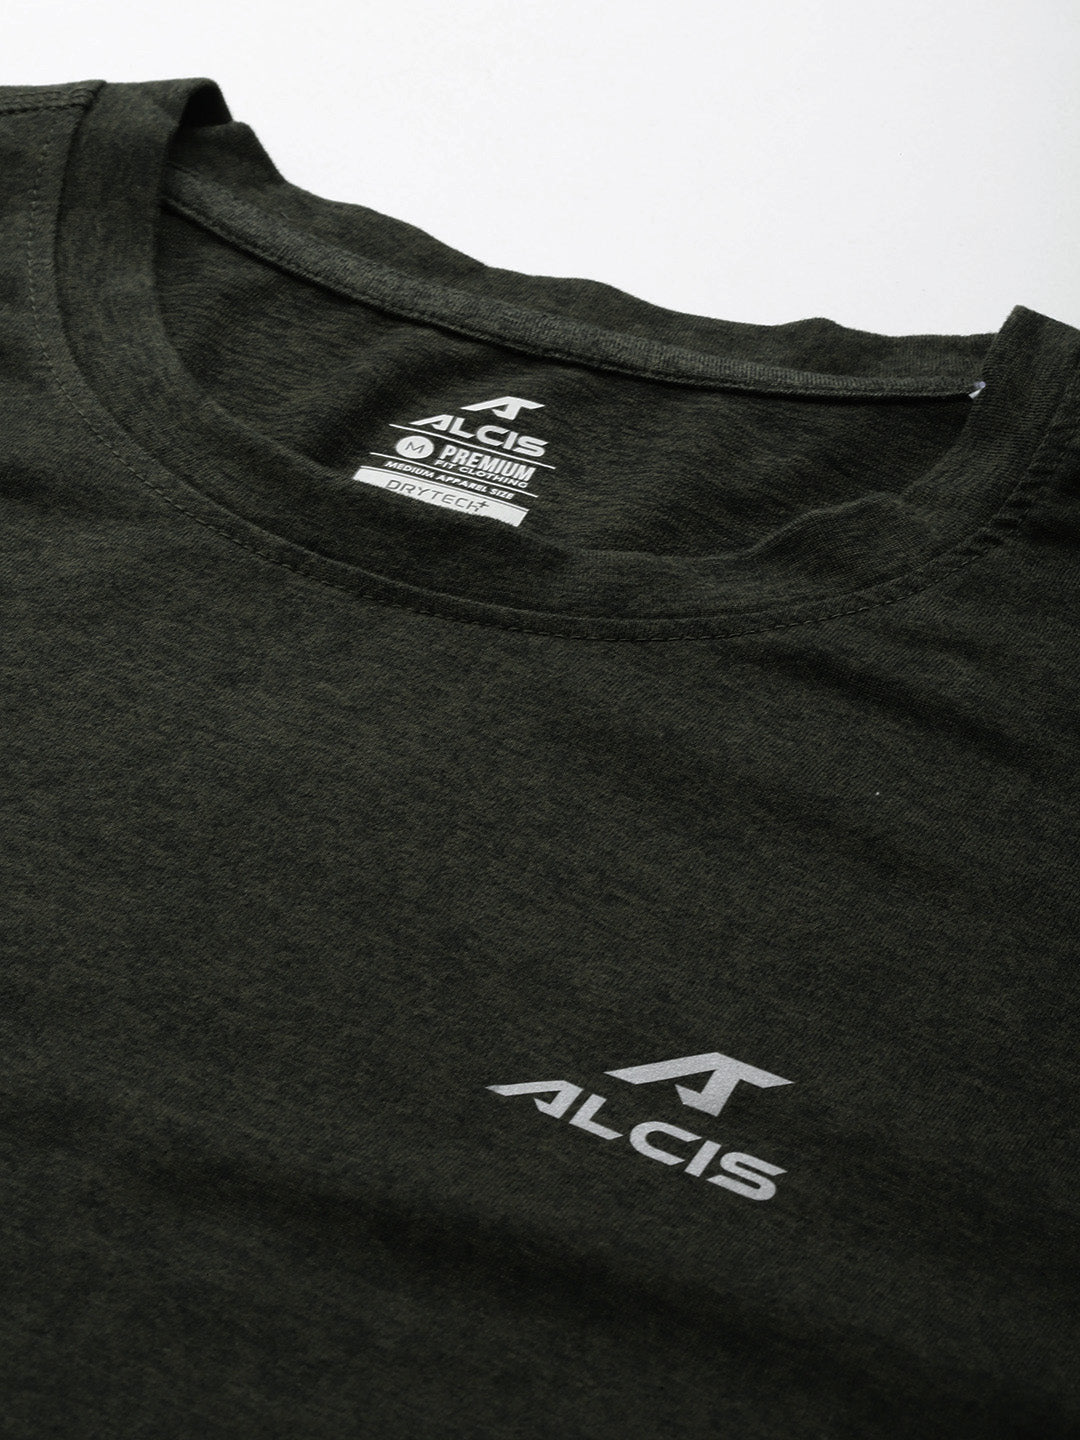 Alcis Men Solid Dry Tech Slim Fit T-shirt